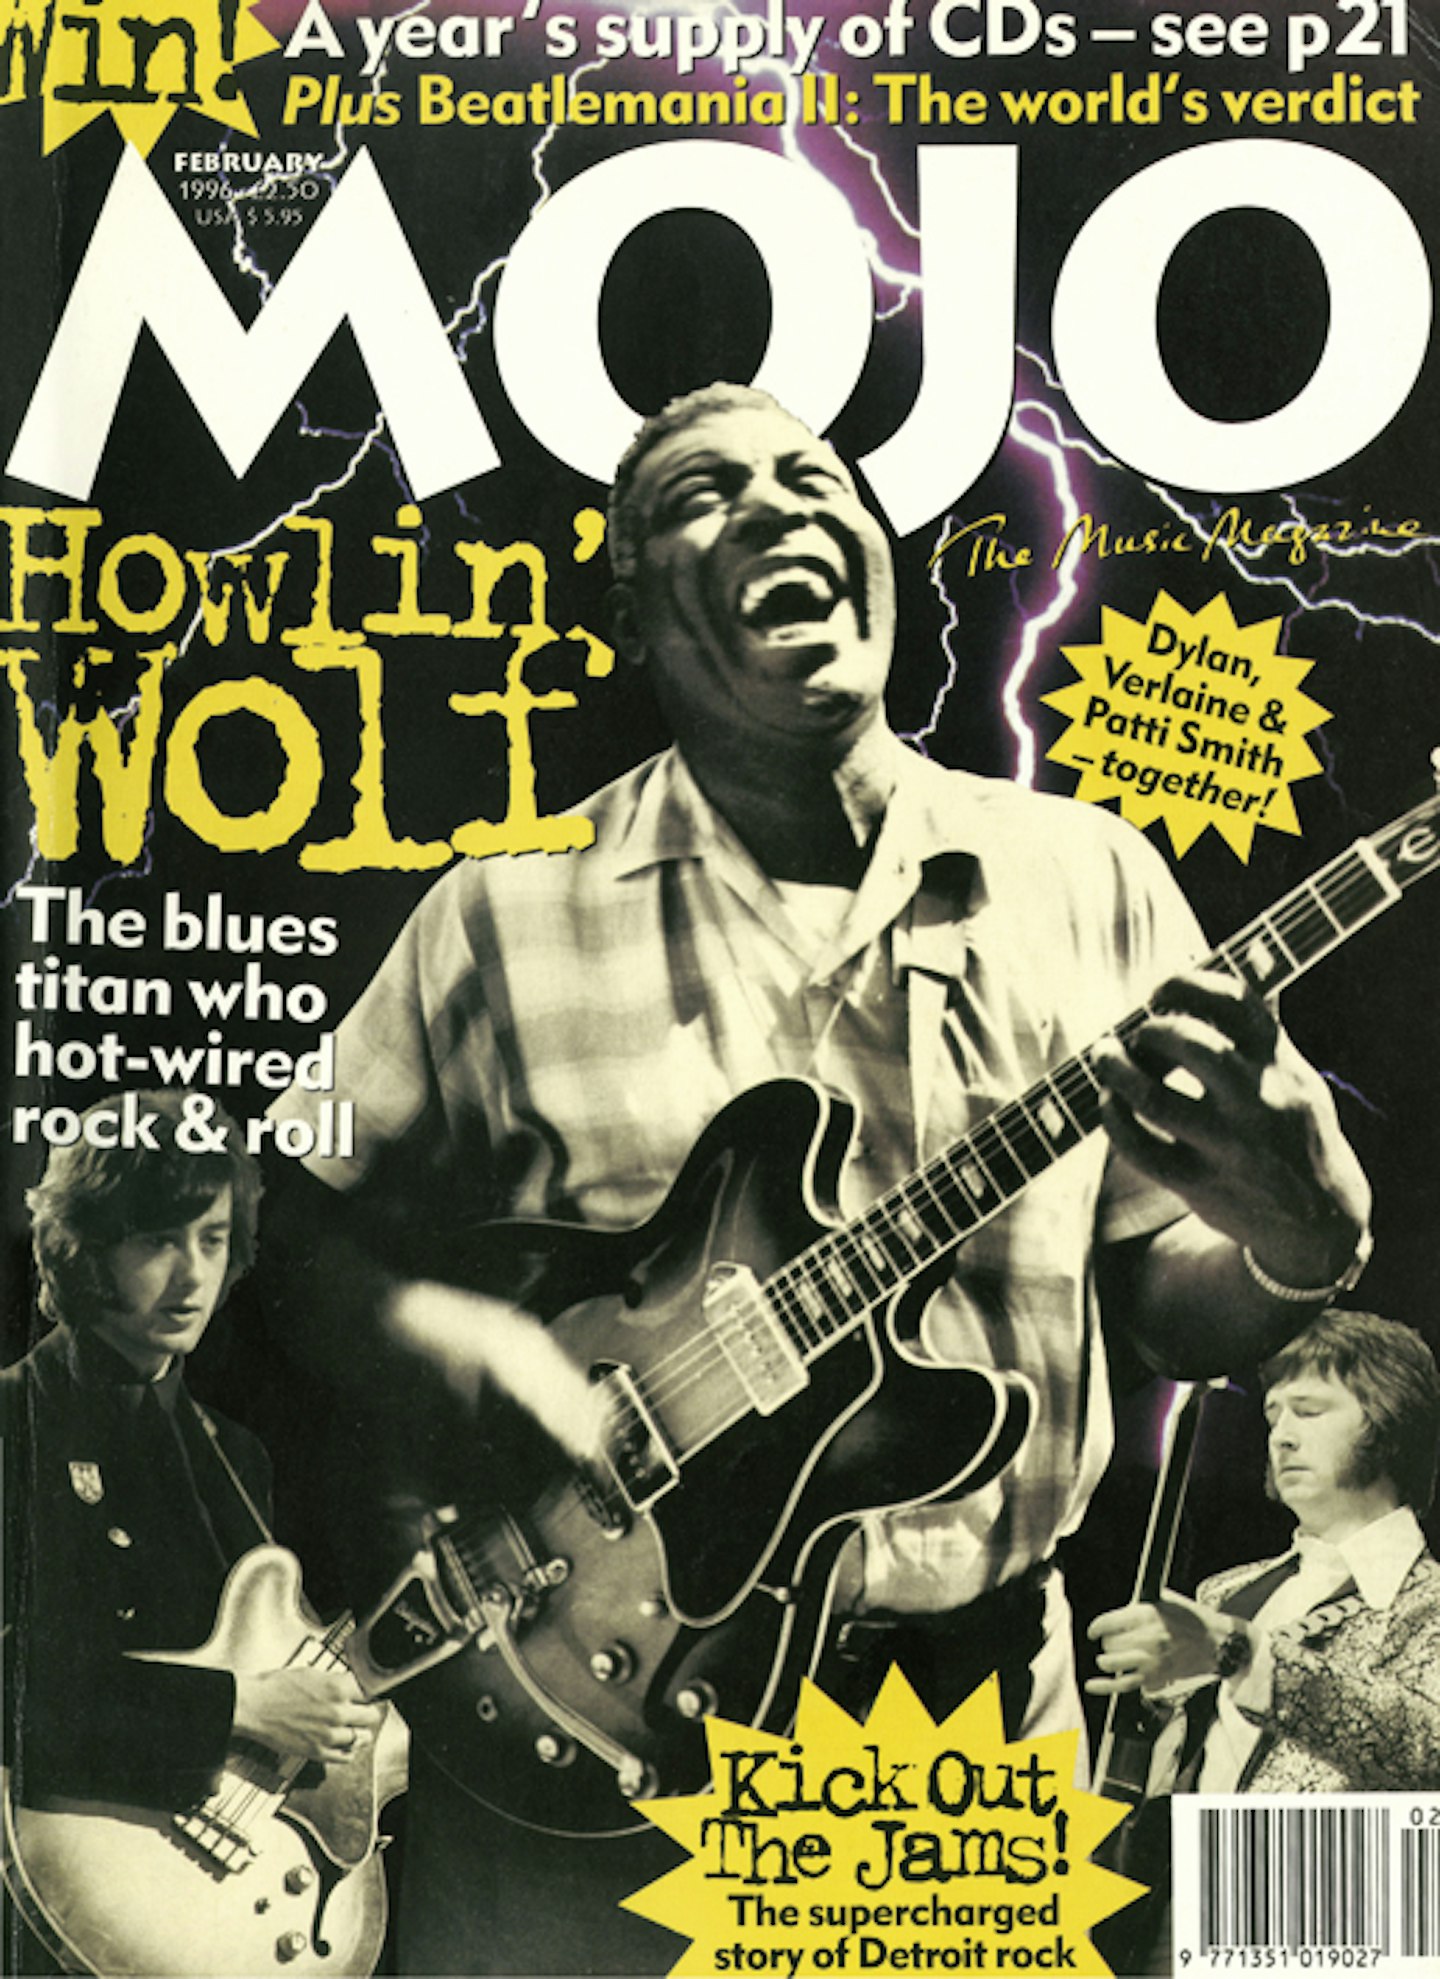 MOJO Issue 27 / February 1996